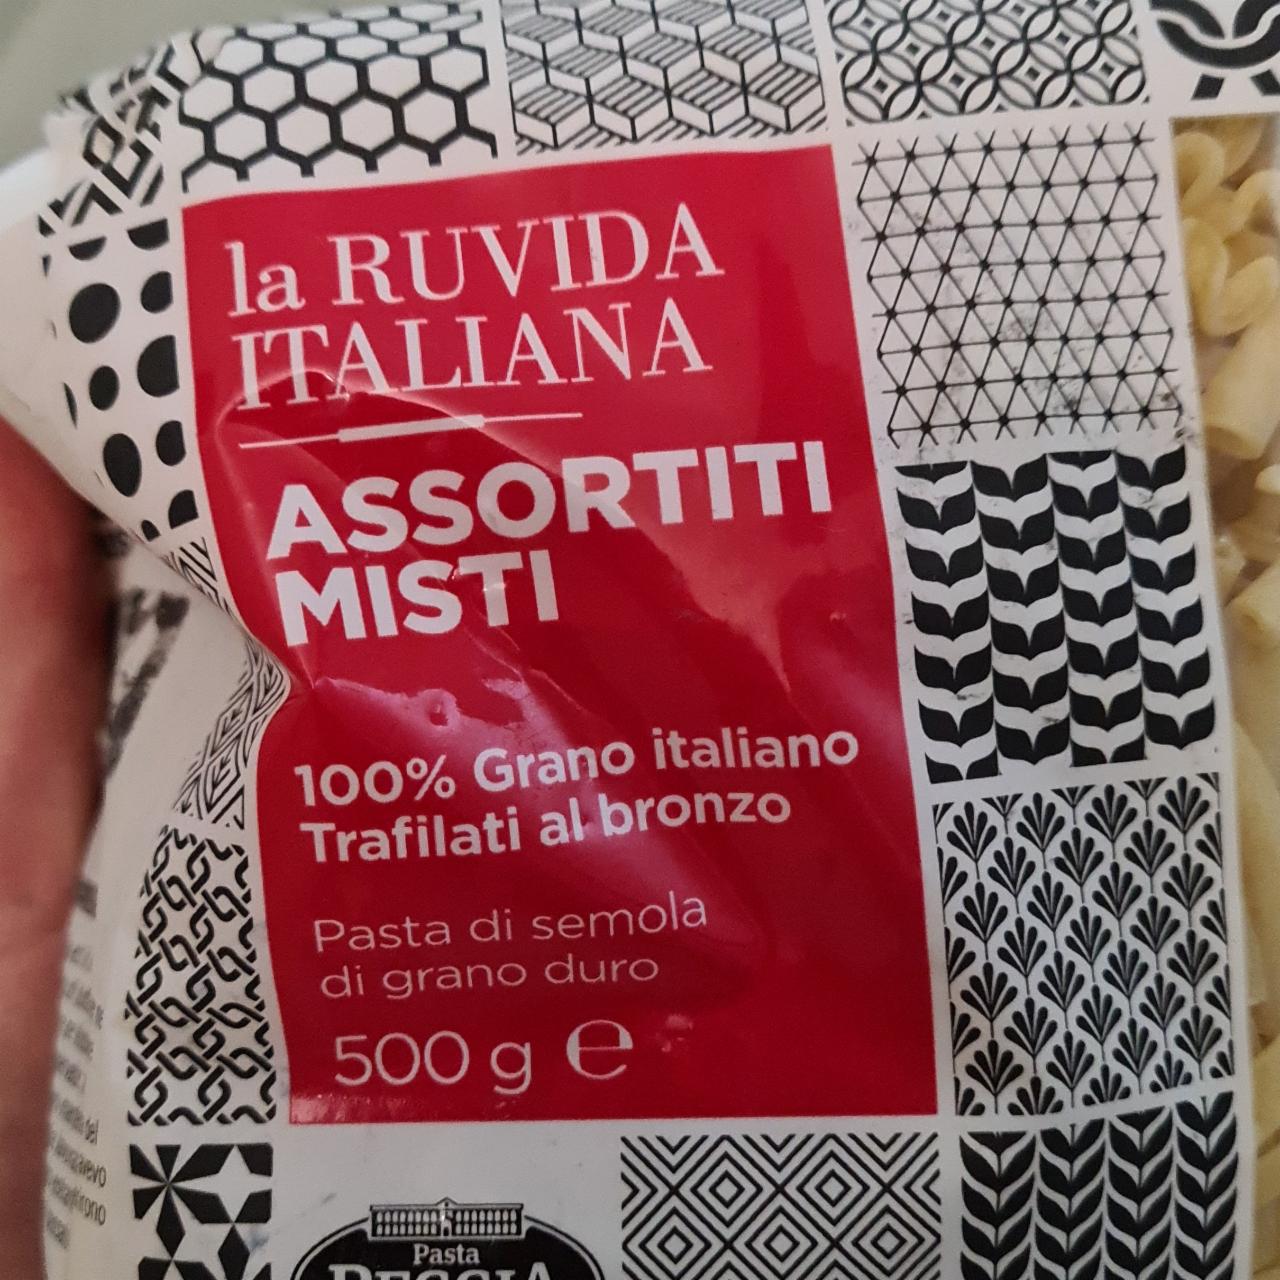 Фото - Макароны Assortiti Misti La Ruvida Pasta Reggia